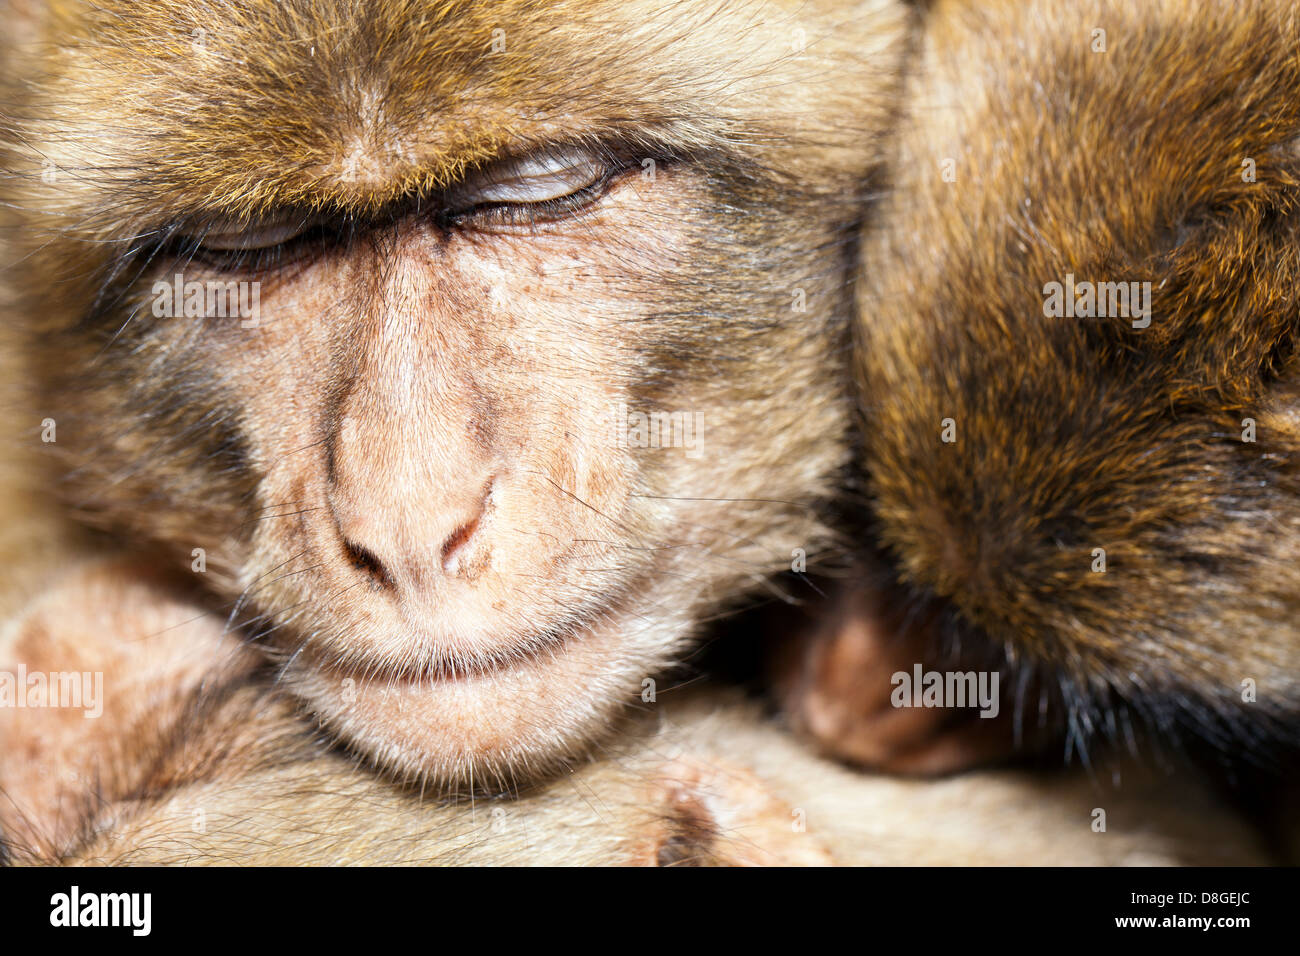 Les trois singes le partage d'un group hug comme ils se blottir et dormir ensemble. Macaque de Barbarie (Macaca sylvanus), une espèce en voie de disparition. Banque D'Images